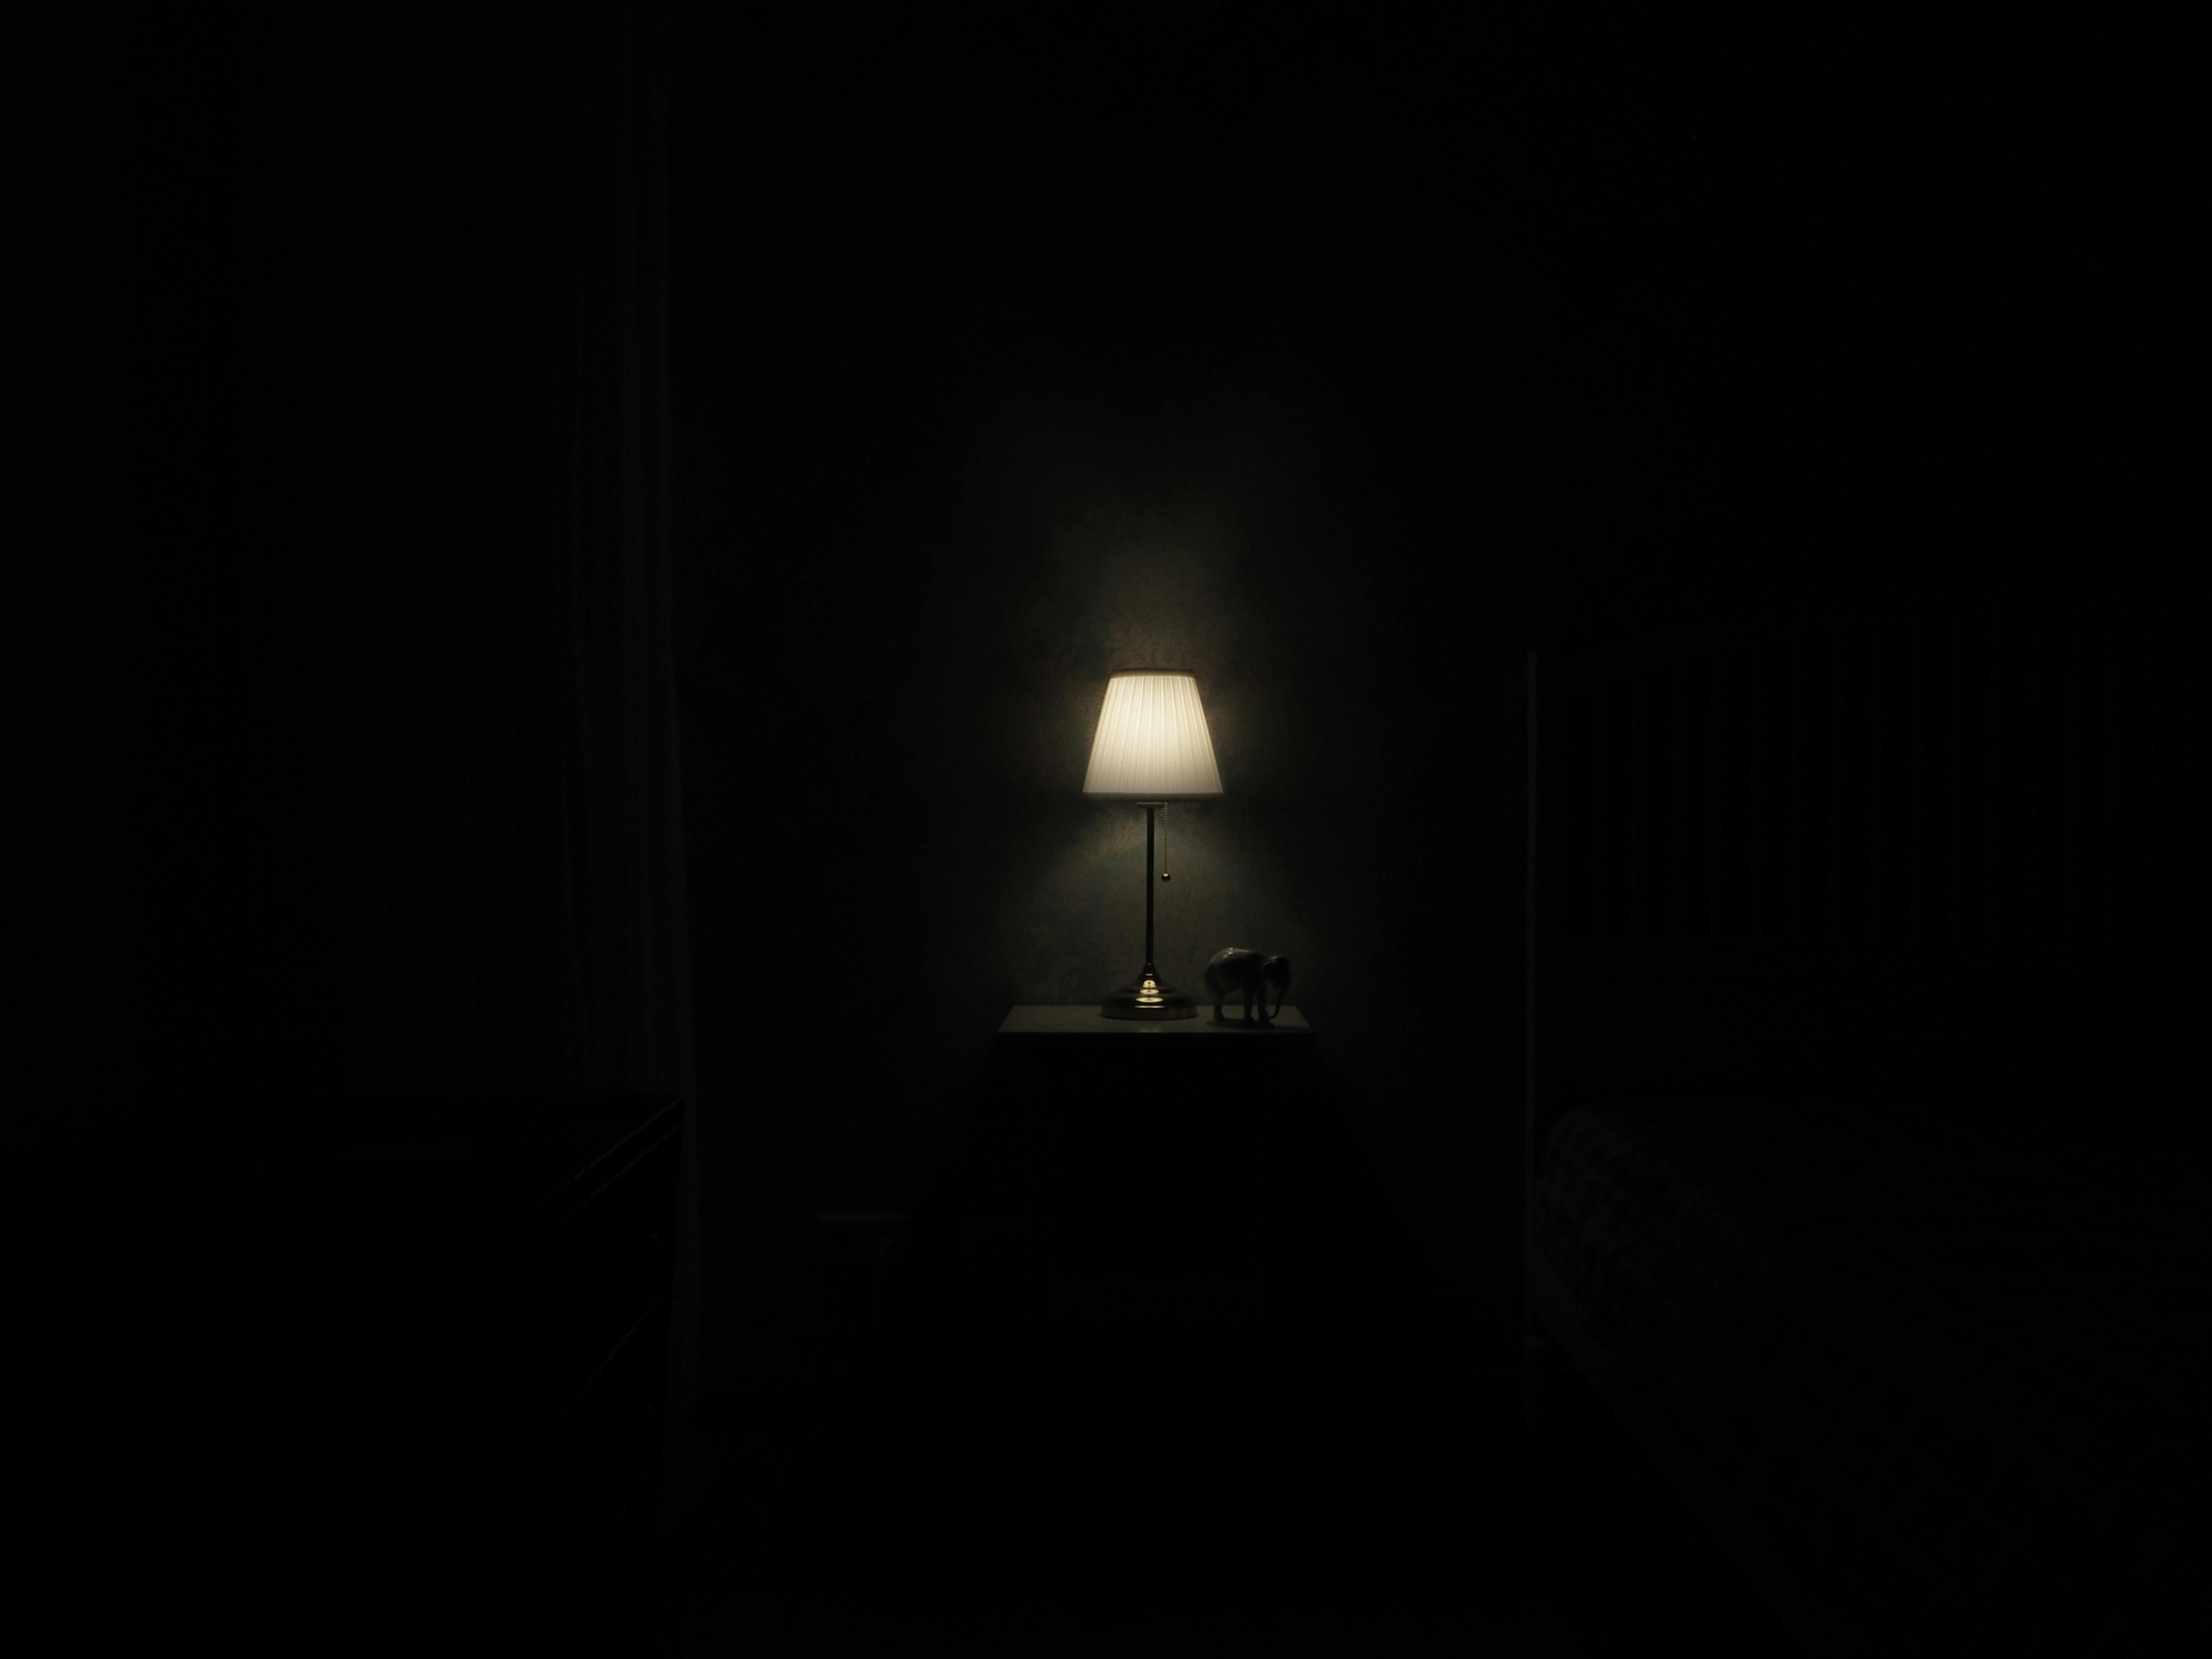 Hình phòng tối: Hình phòng tối với độ chân thực cao sẽ giúp bạn trải nghiệm cảm giác như đang bước vào một căn phòng tối đầy u ám. Hãy cùng khám phá những hình ảnh đặc biệt này trên trang web của chúng tôi.